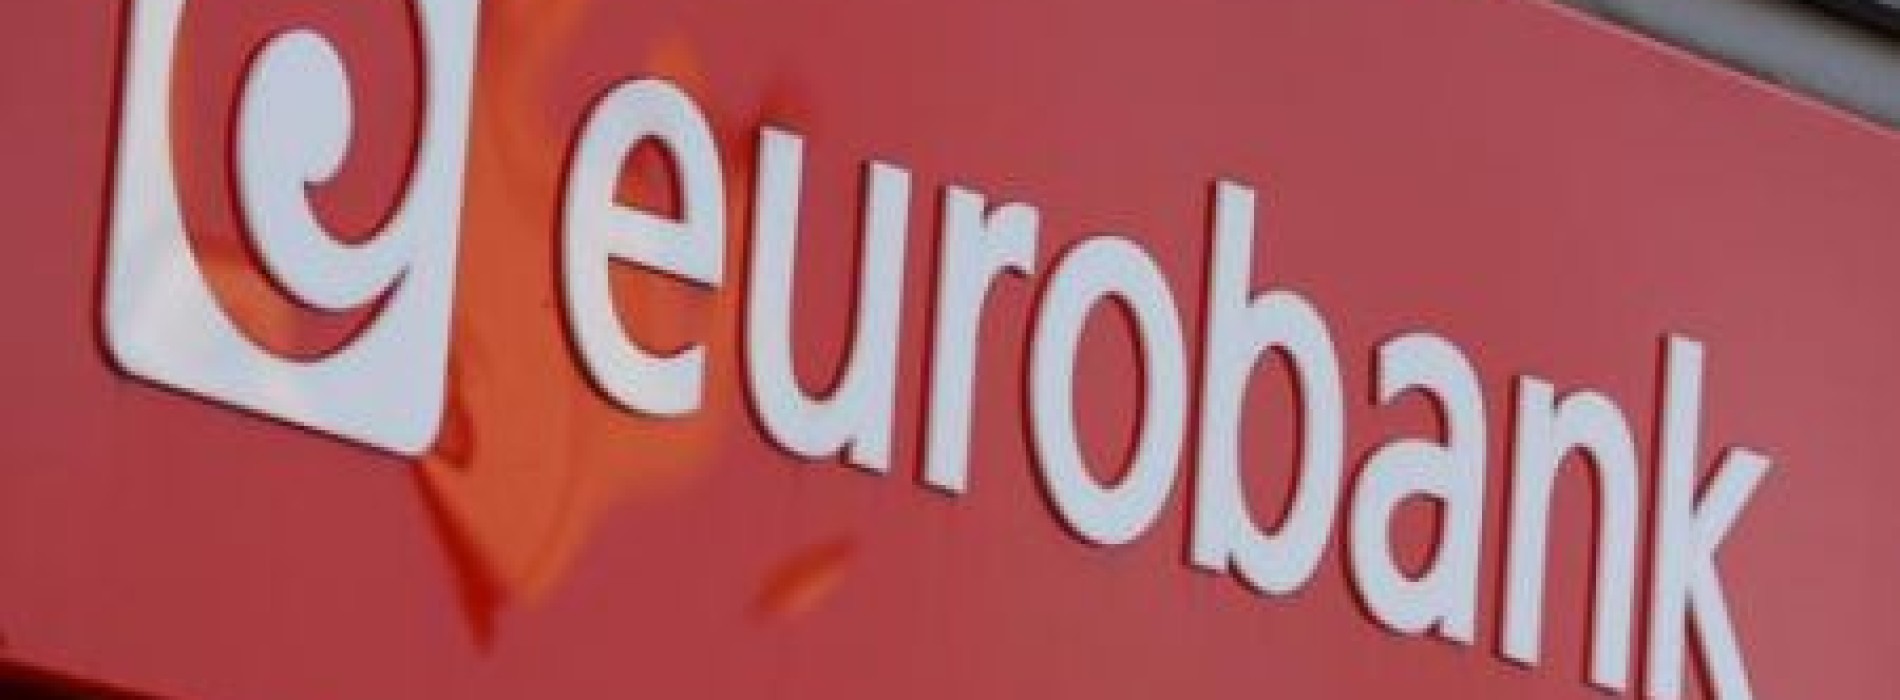 eurobank: kredyt z gwarancją szybkości